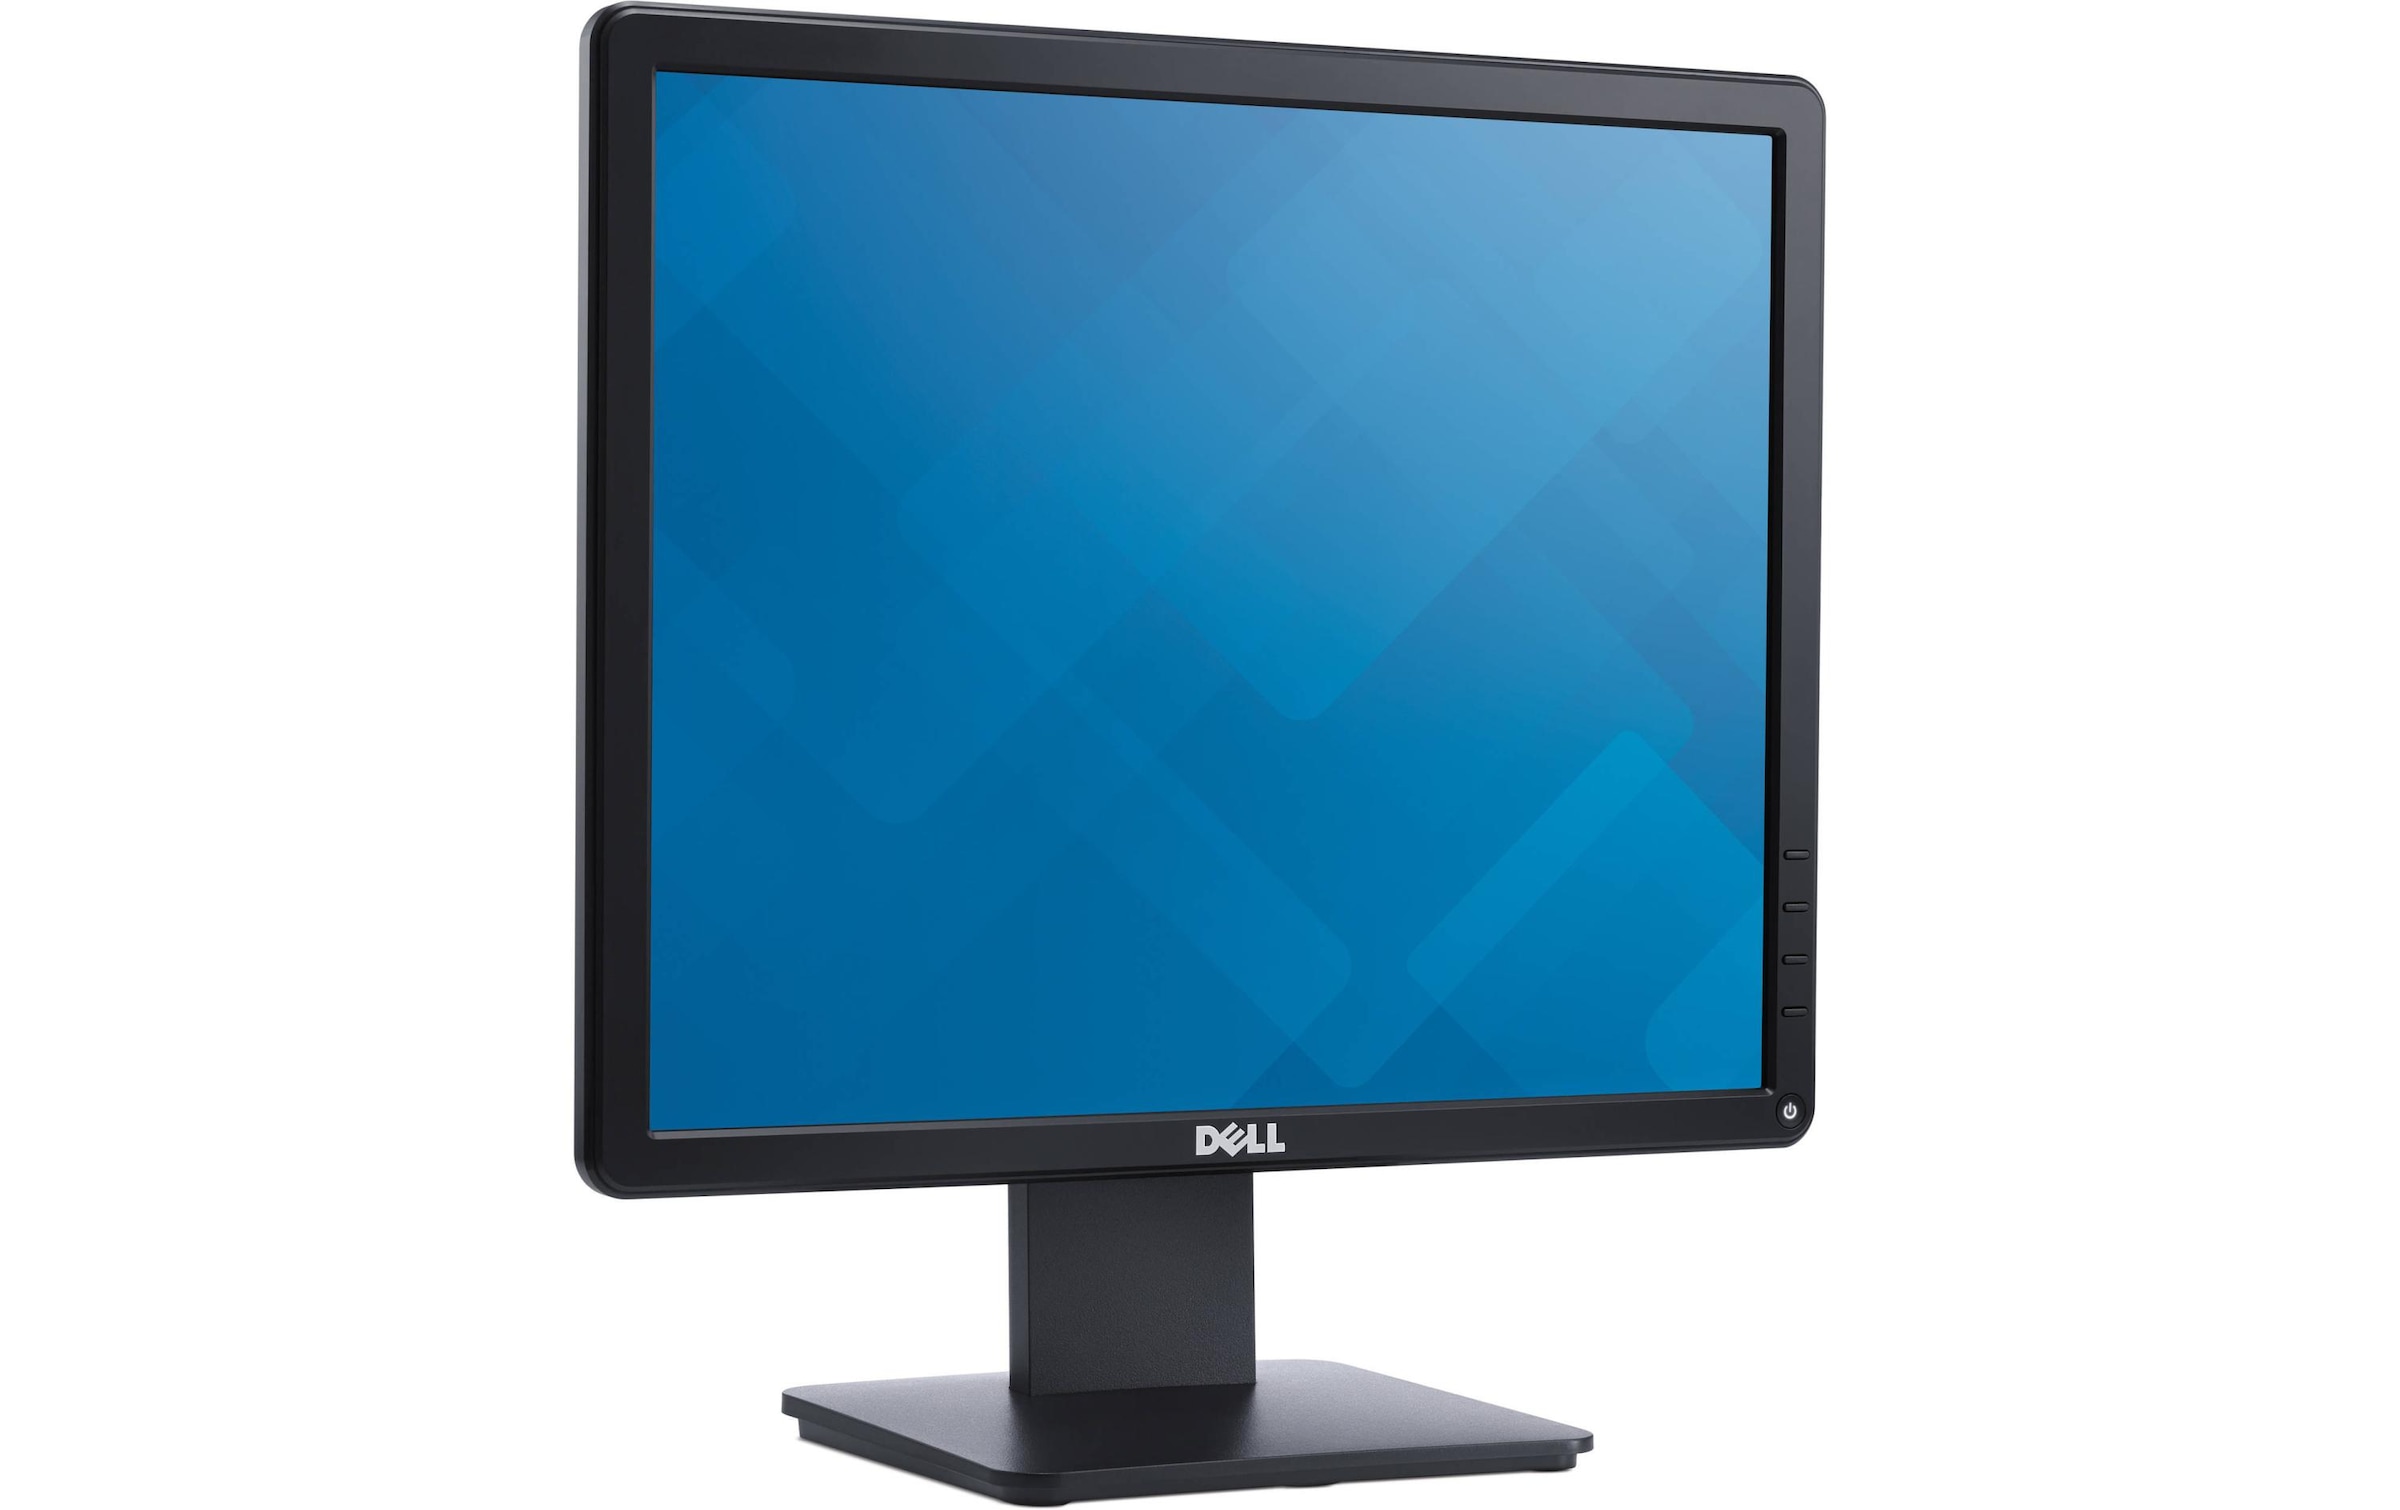 Dell LCD-Monitor »E1715S«, 43 cm/17 Zoll, 1280 x 1024 px